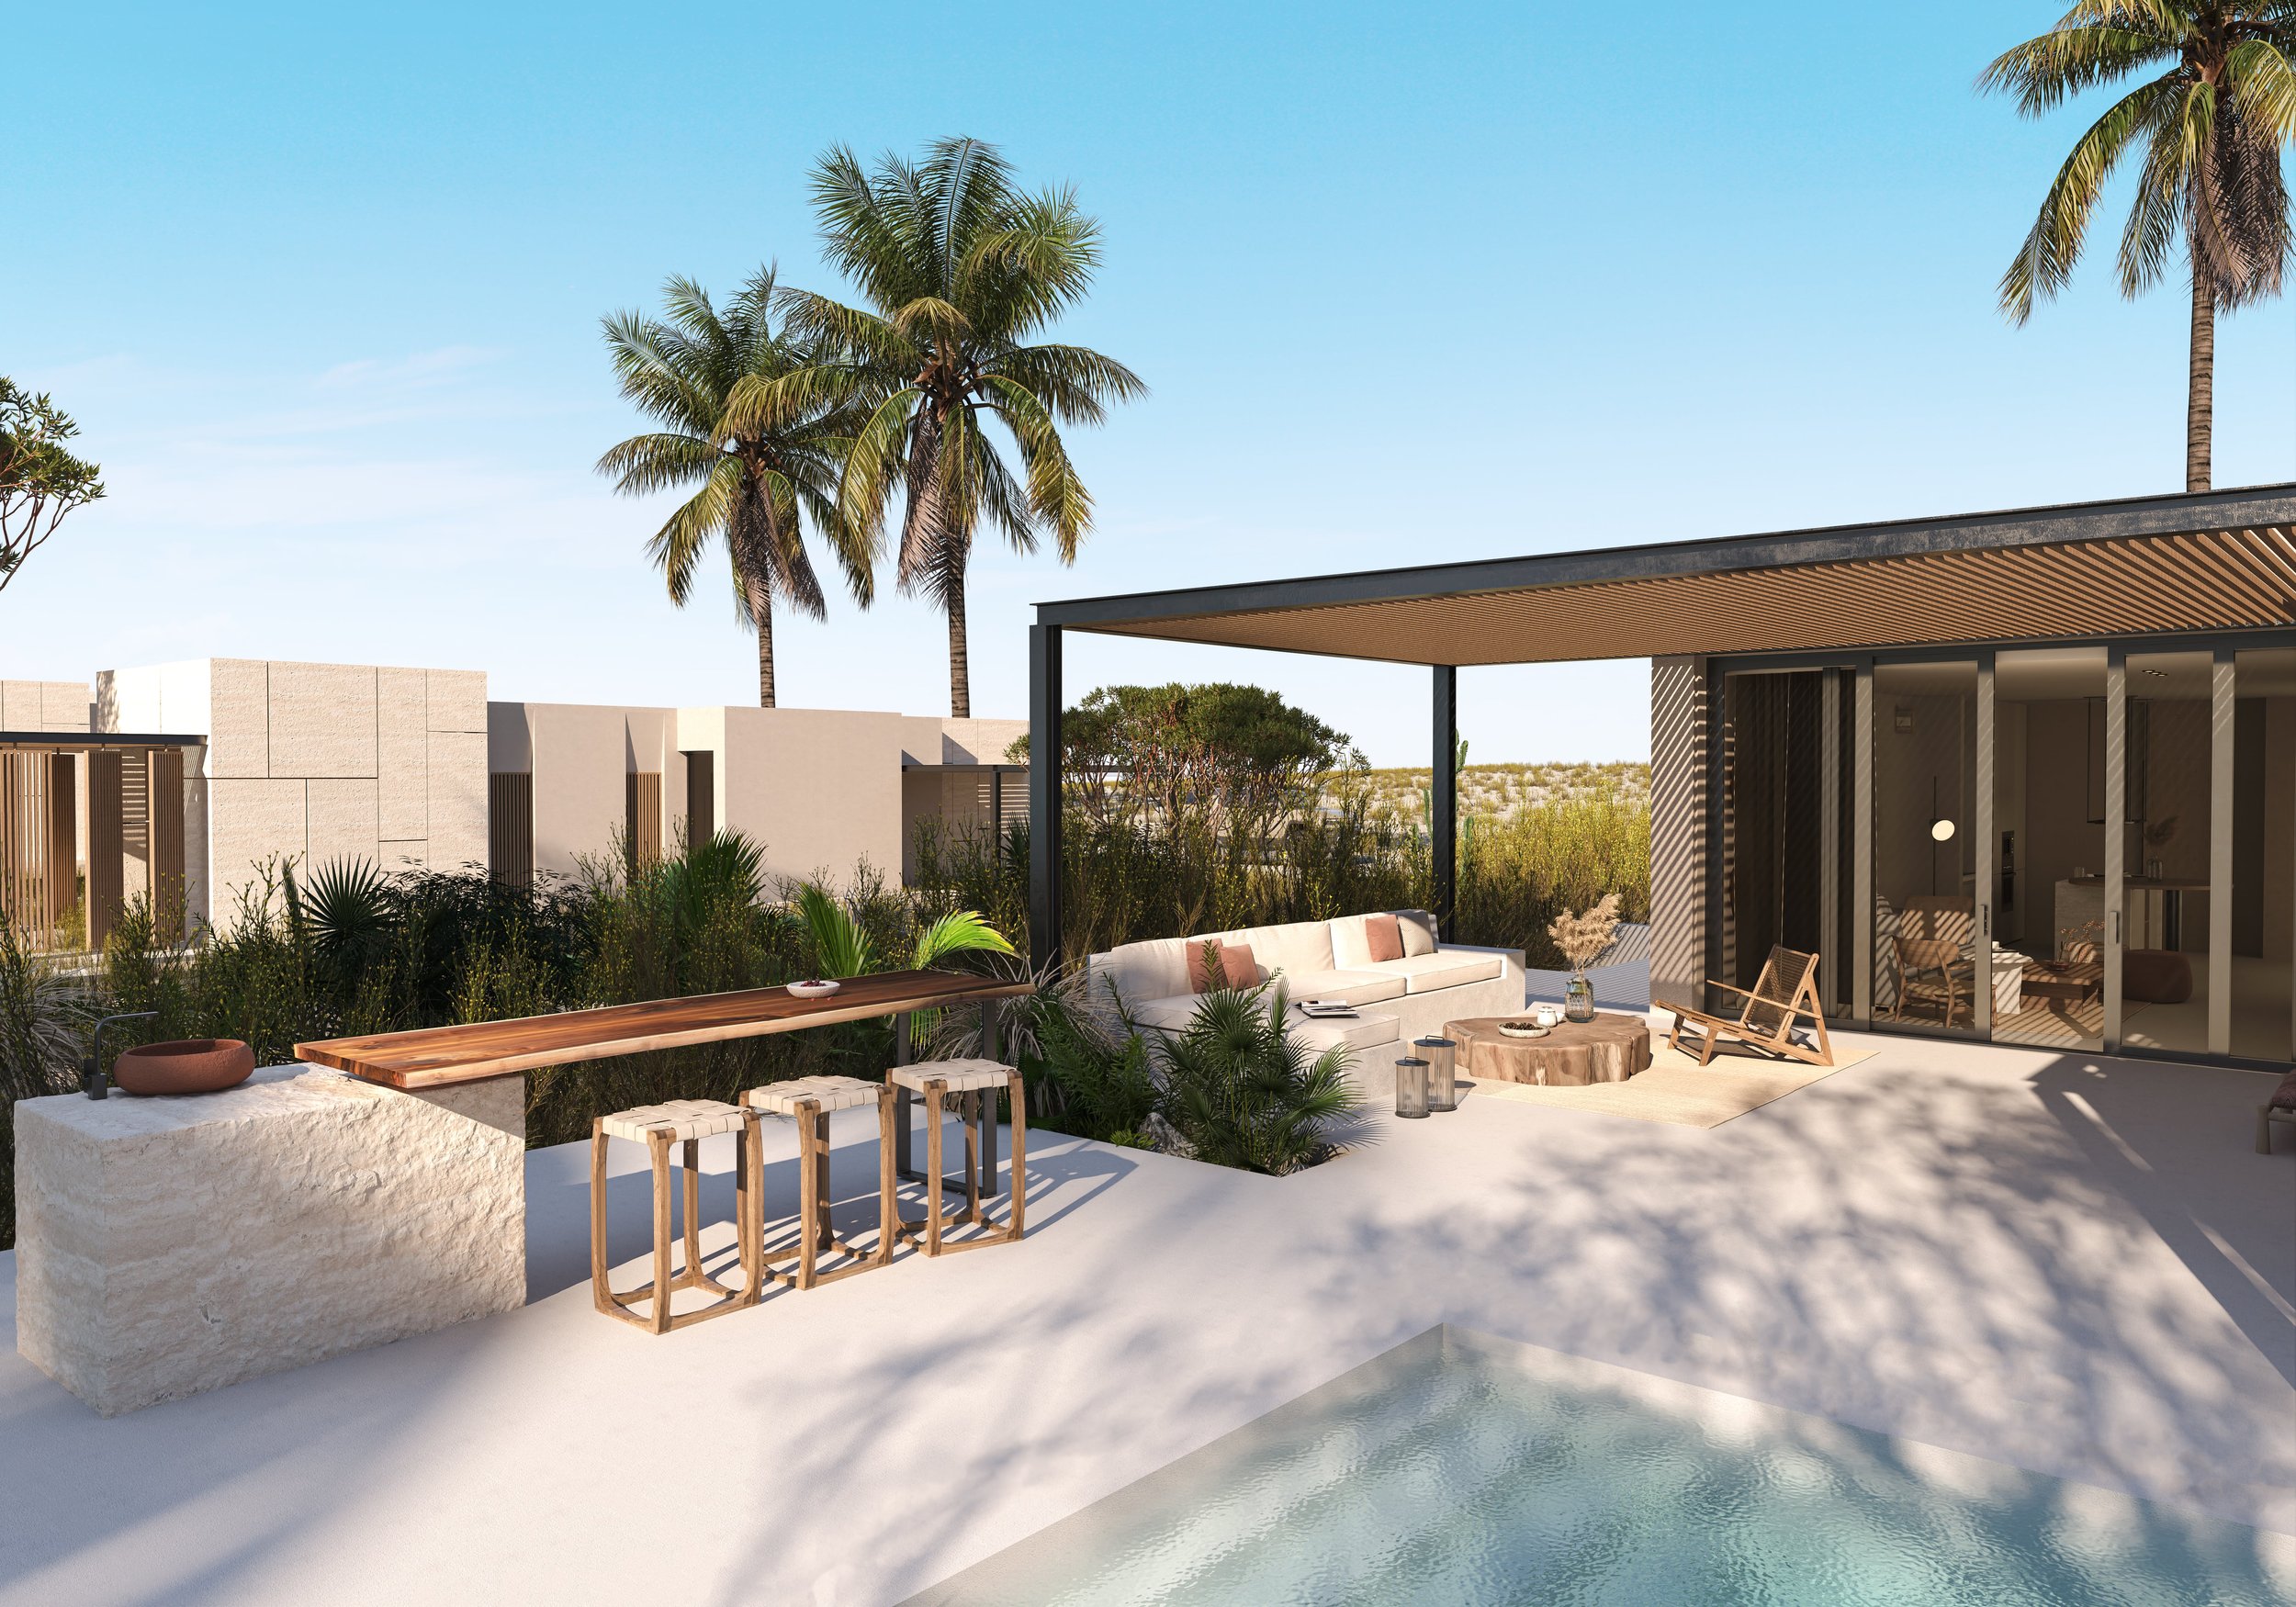 Invest in luxury living-buy a villa at Soma Bay -min.jpg